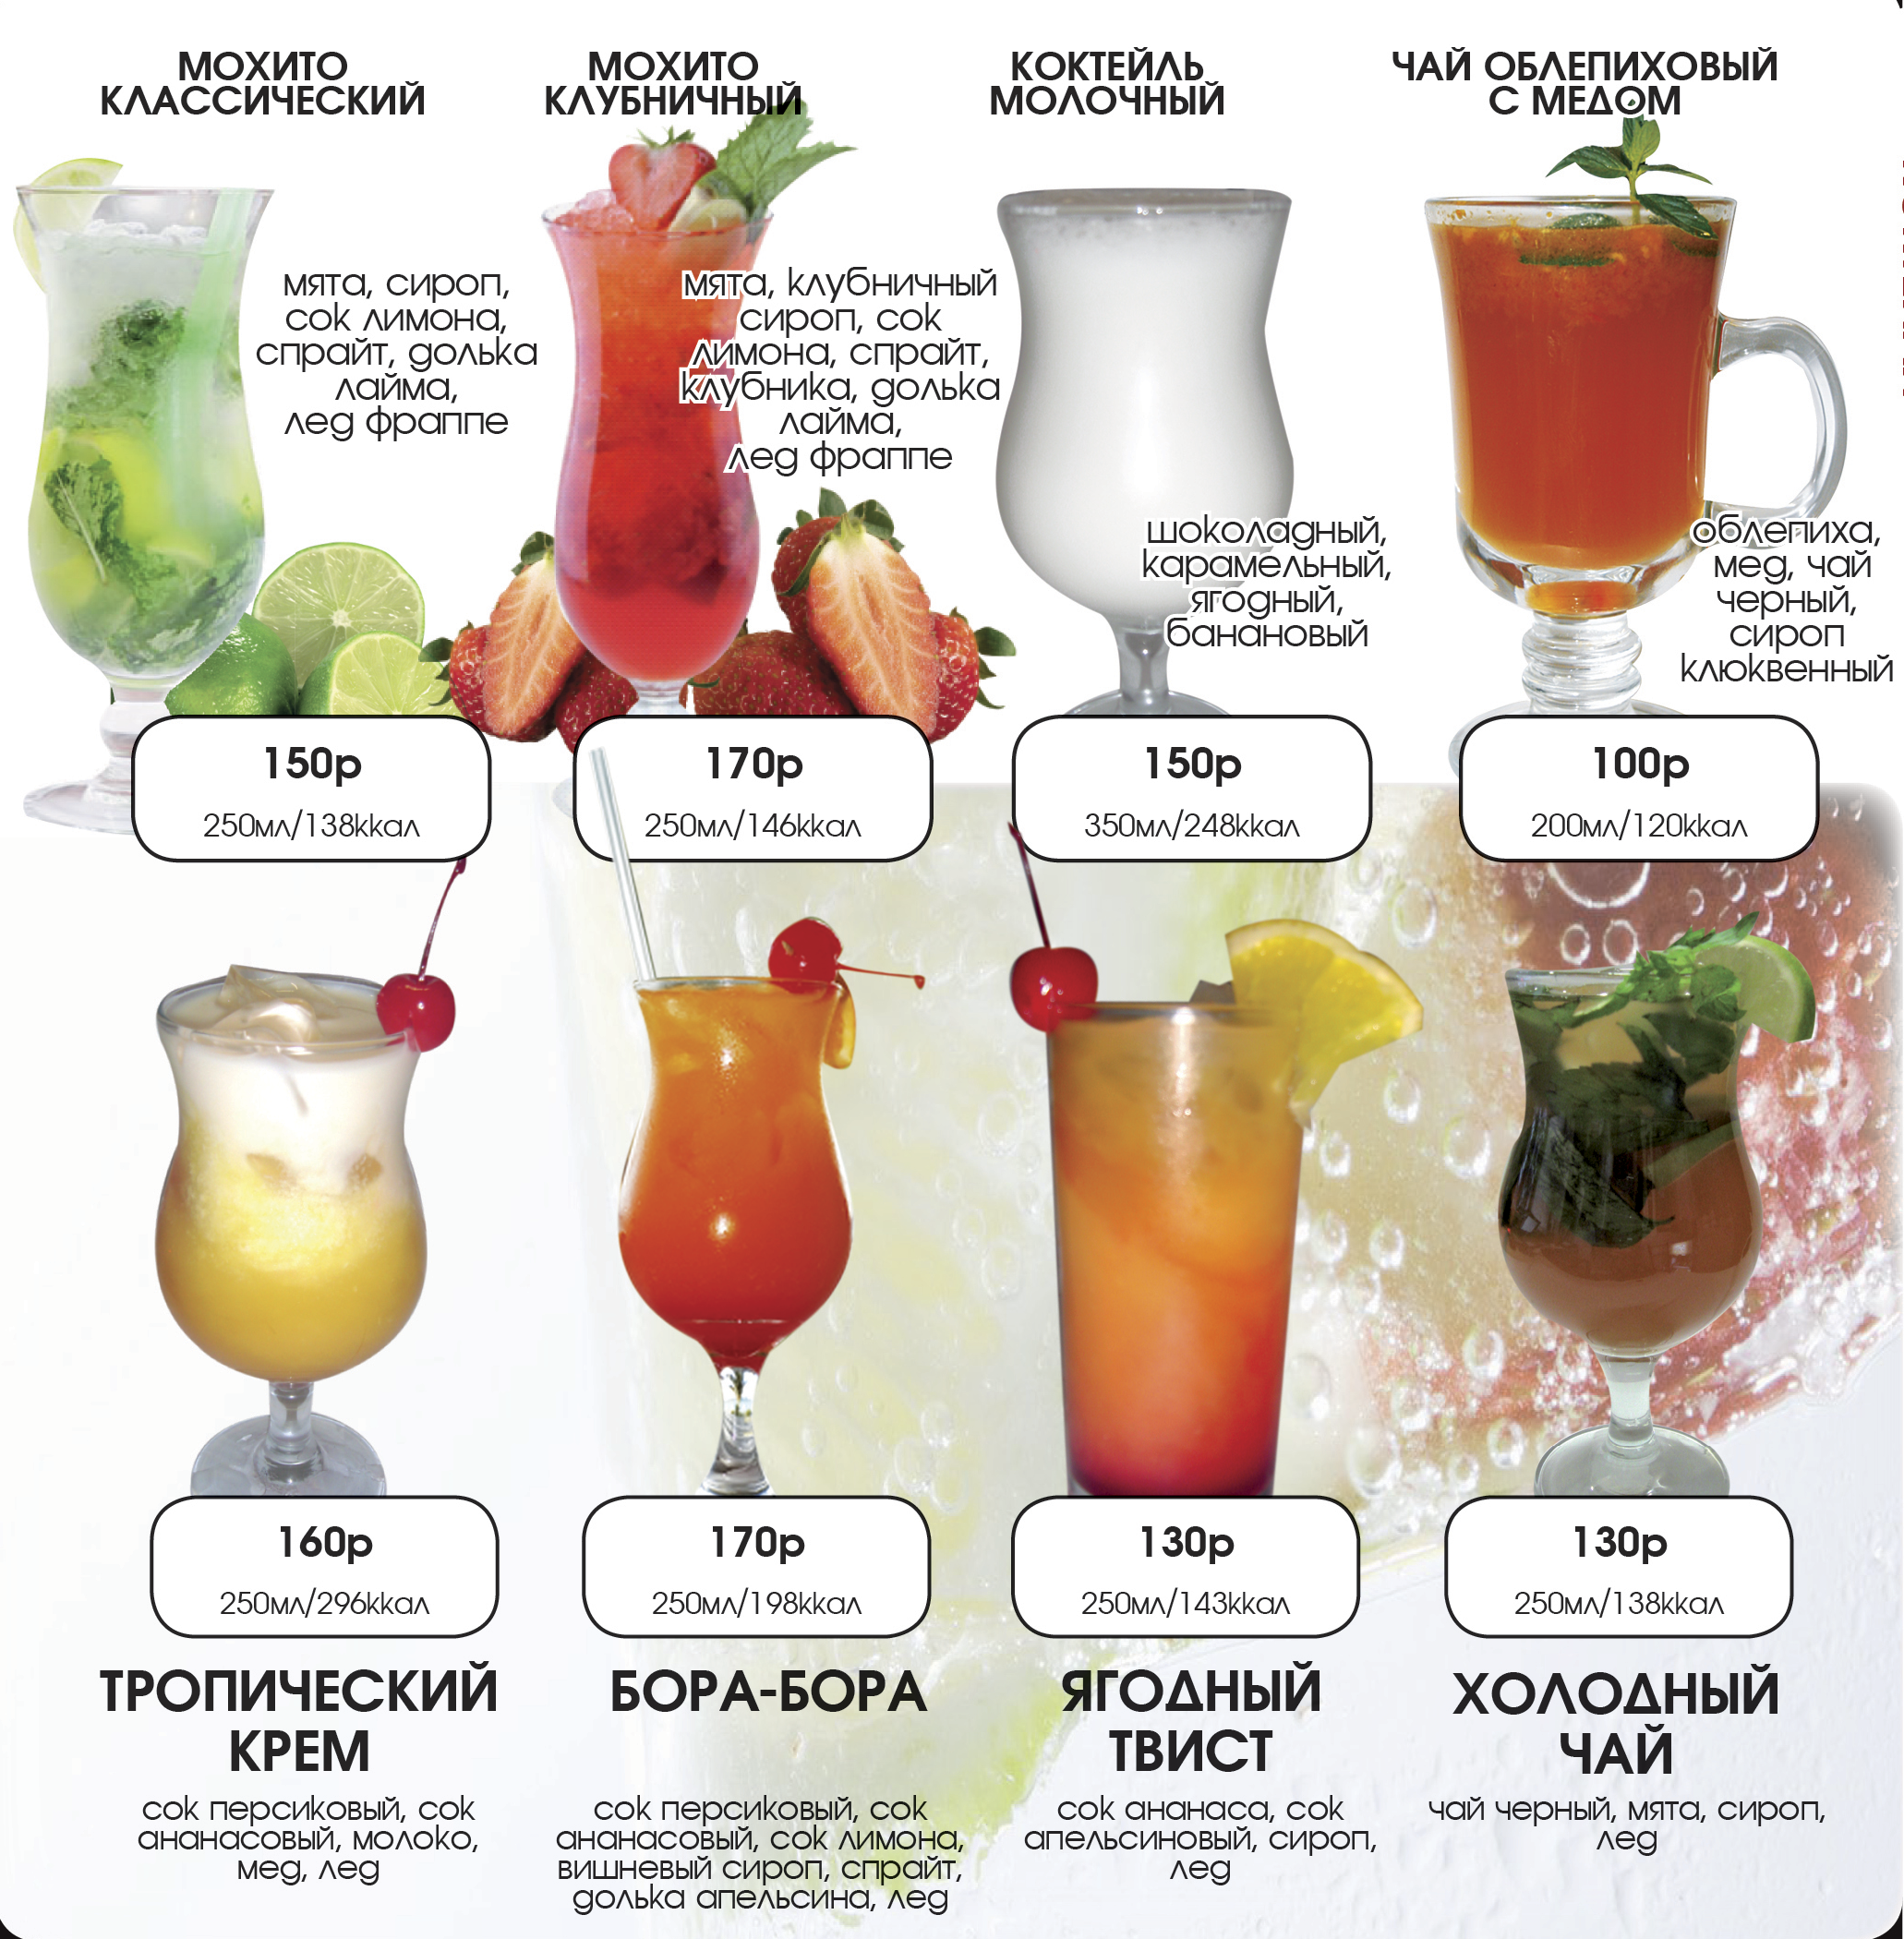 Алкогольный напиток ракия: виды, рецепты приготовления, коктейли